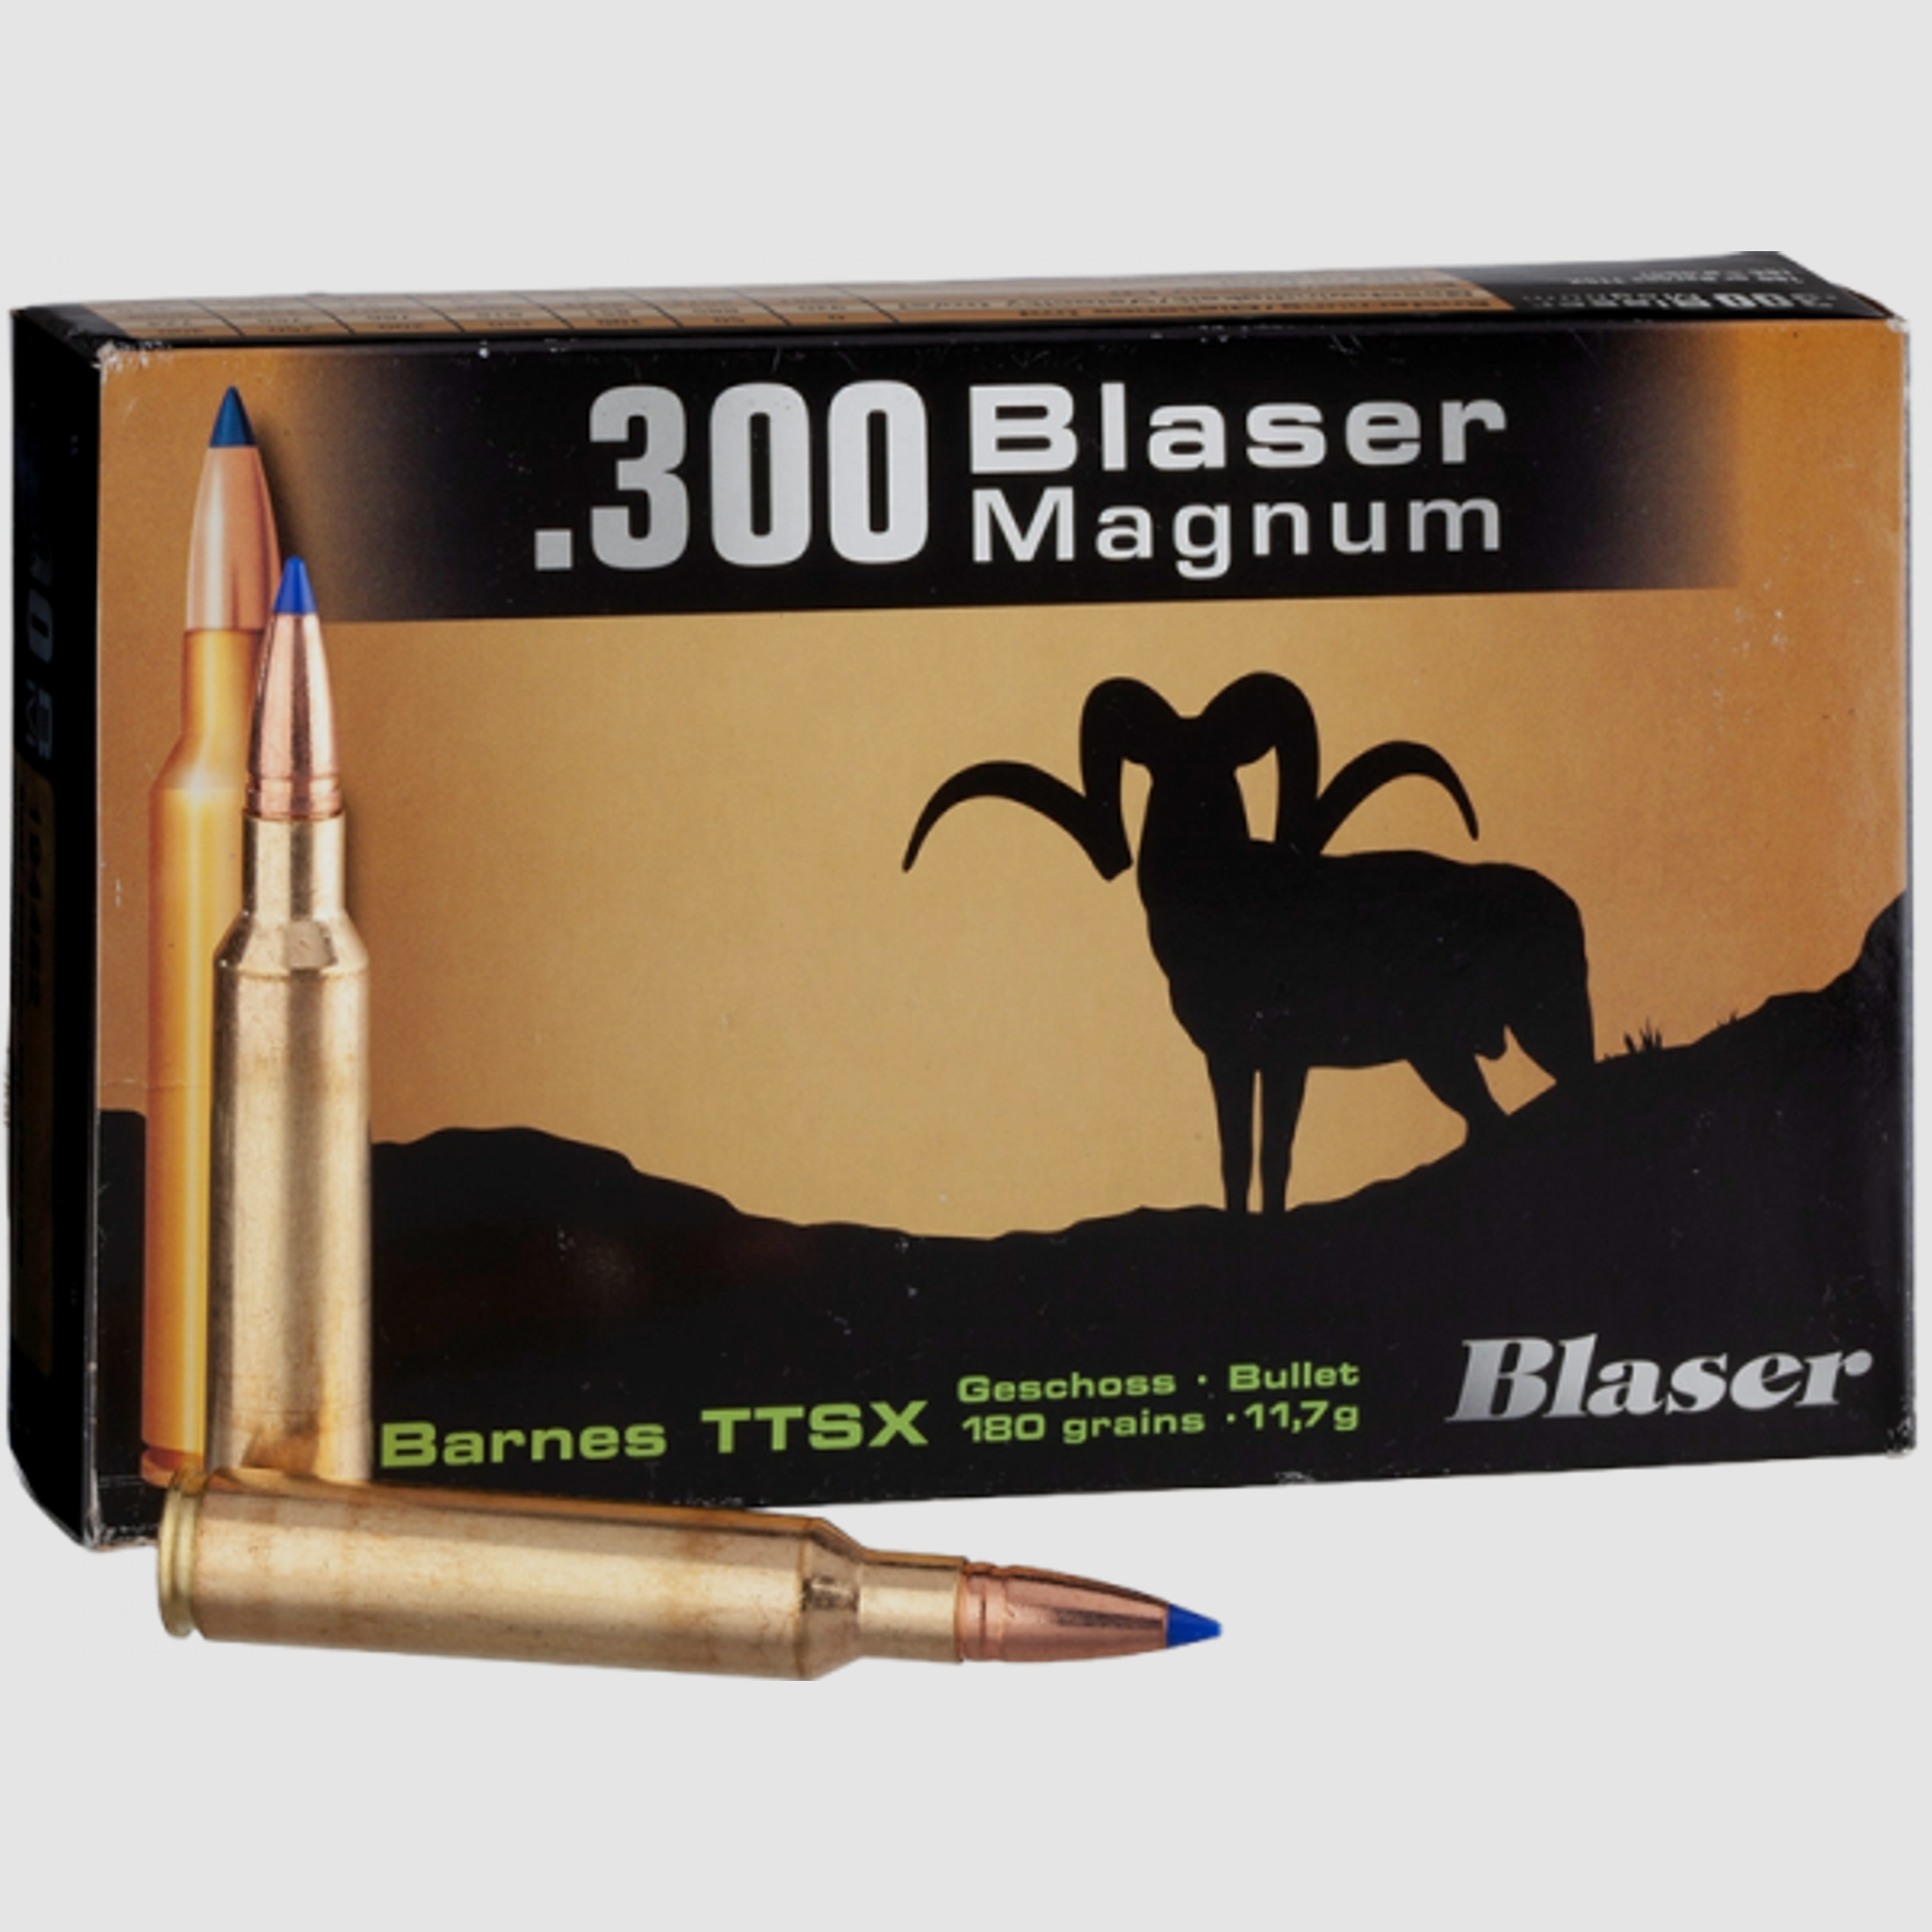 Blaser Magnum .300 Blaser Mag Barnes TTSX 180 grs Büchsenpatronen